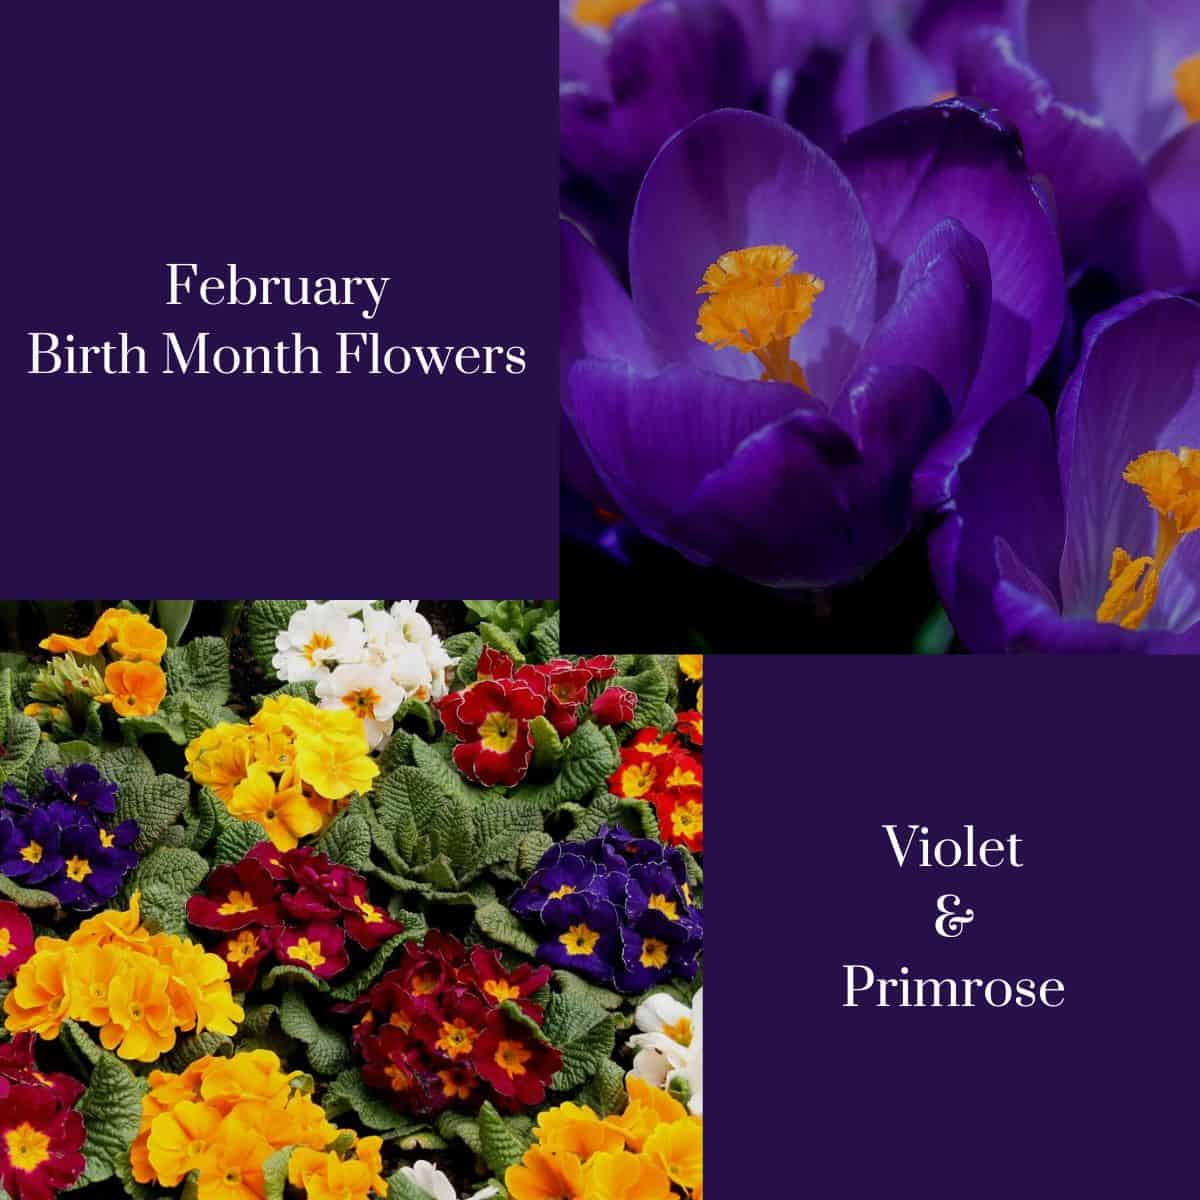 violet and primrose labelled